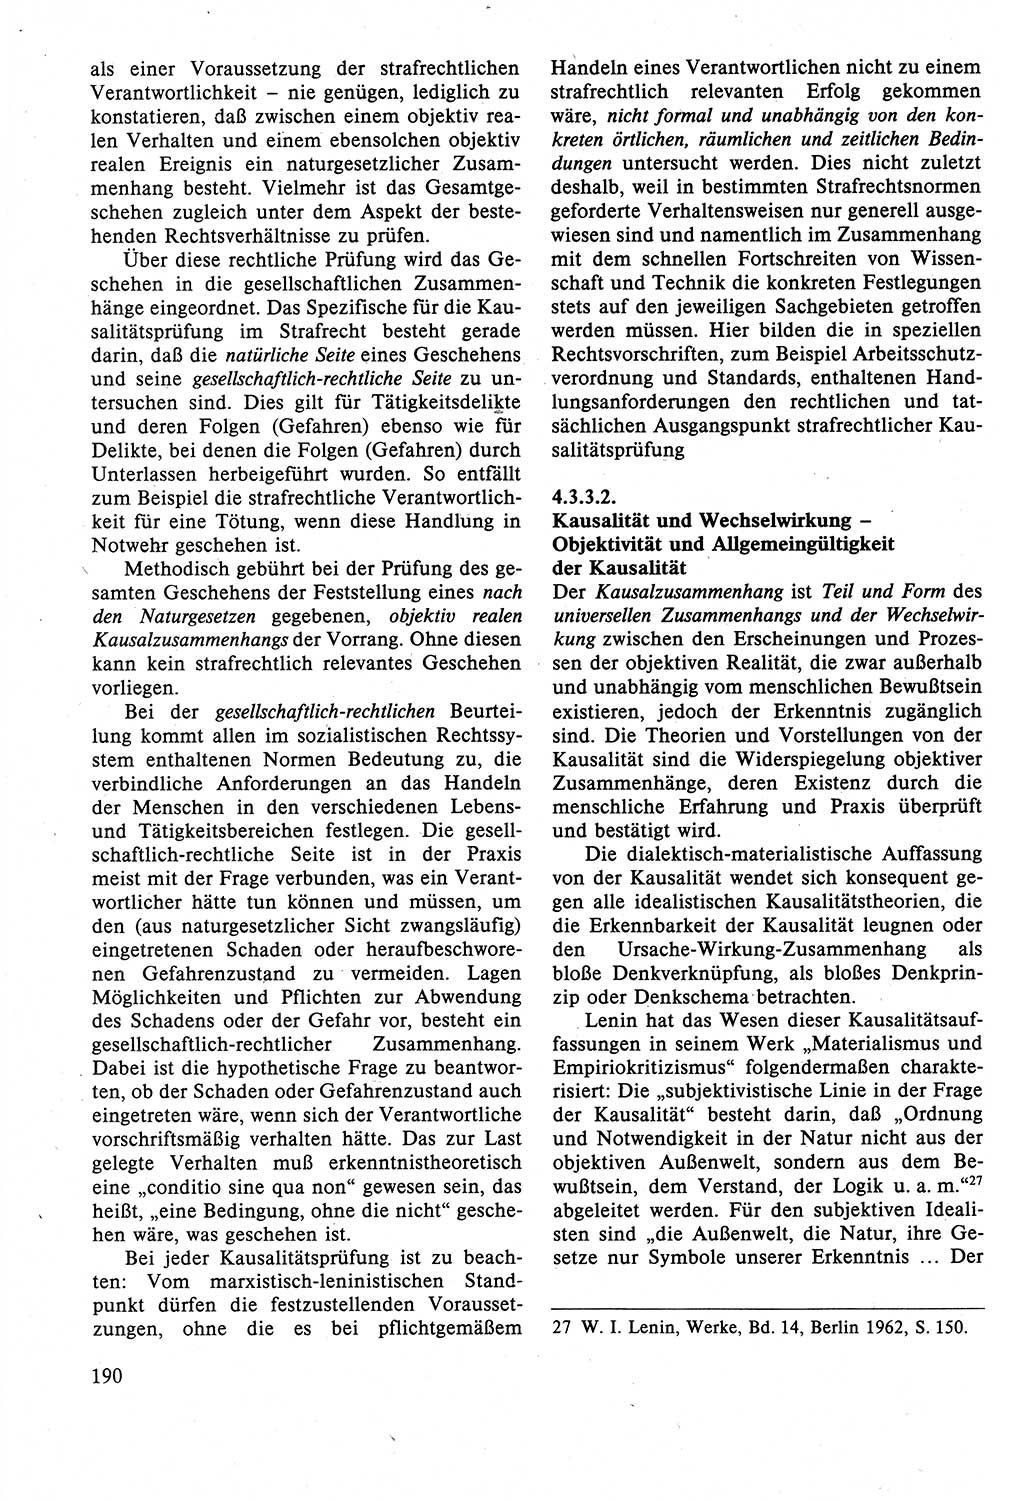 Strafrecht der DDR (Deutsche Demokratische Republik), Lehrbuch 1988, Seite 190 (Strafr. DDR Lb. 1988, S. 190)